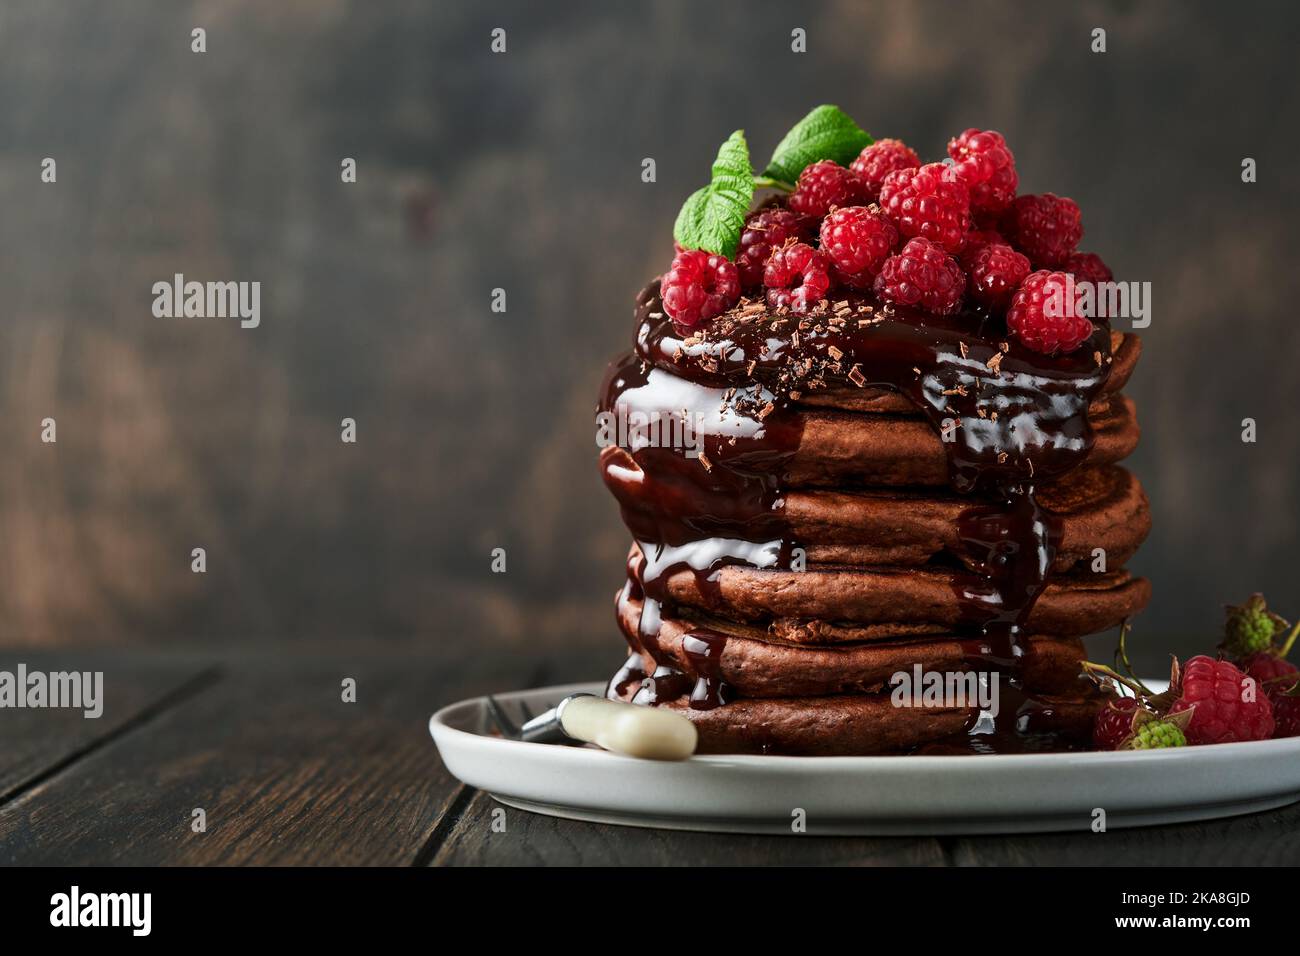 Schokoladenpfannkuchen. Pfannkuchen mit frischer Himbeere mit Schokoladenglasur oder Toppings in grauer Schale auf altem Holztischhintergrund. Hausgemachter Klassiker ameri Stockfoto